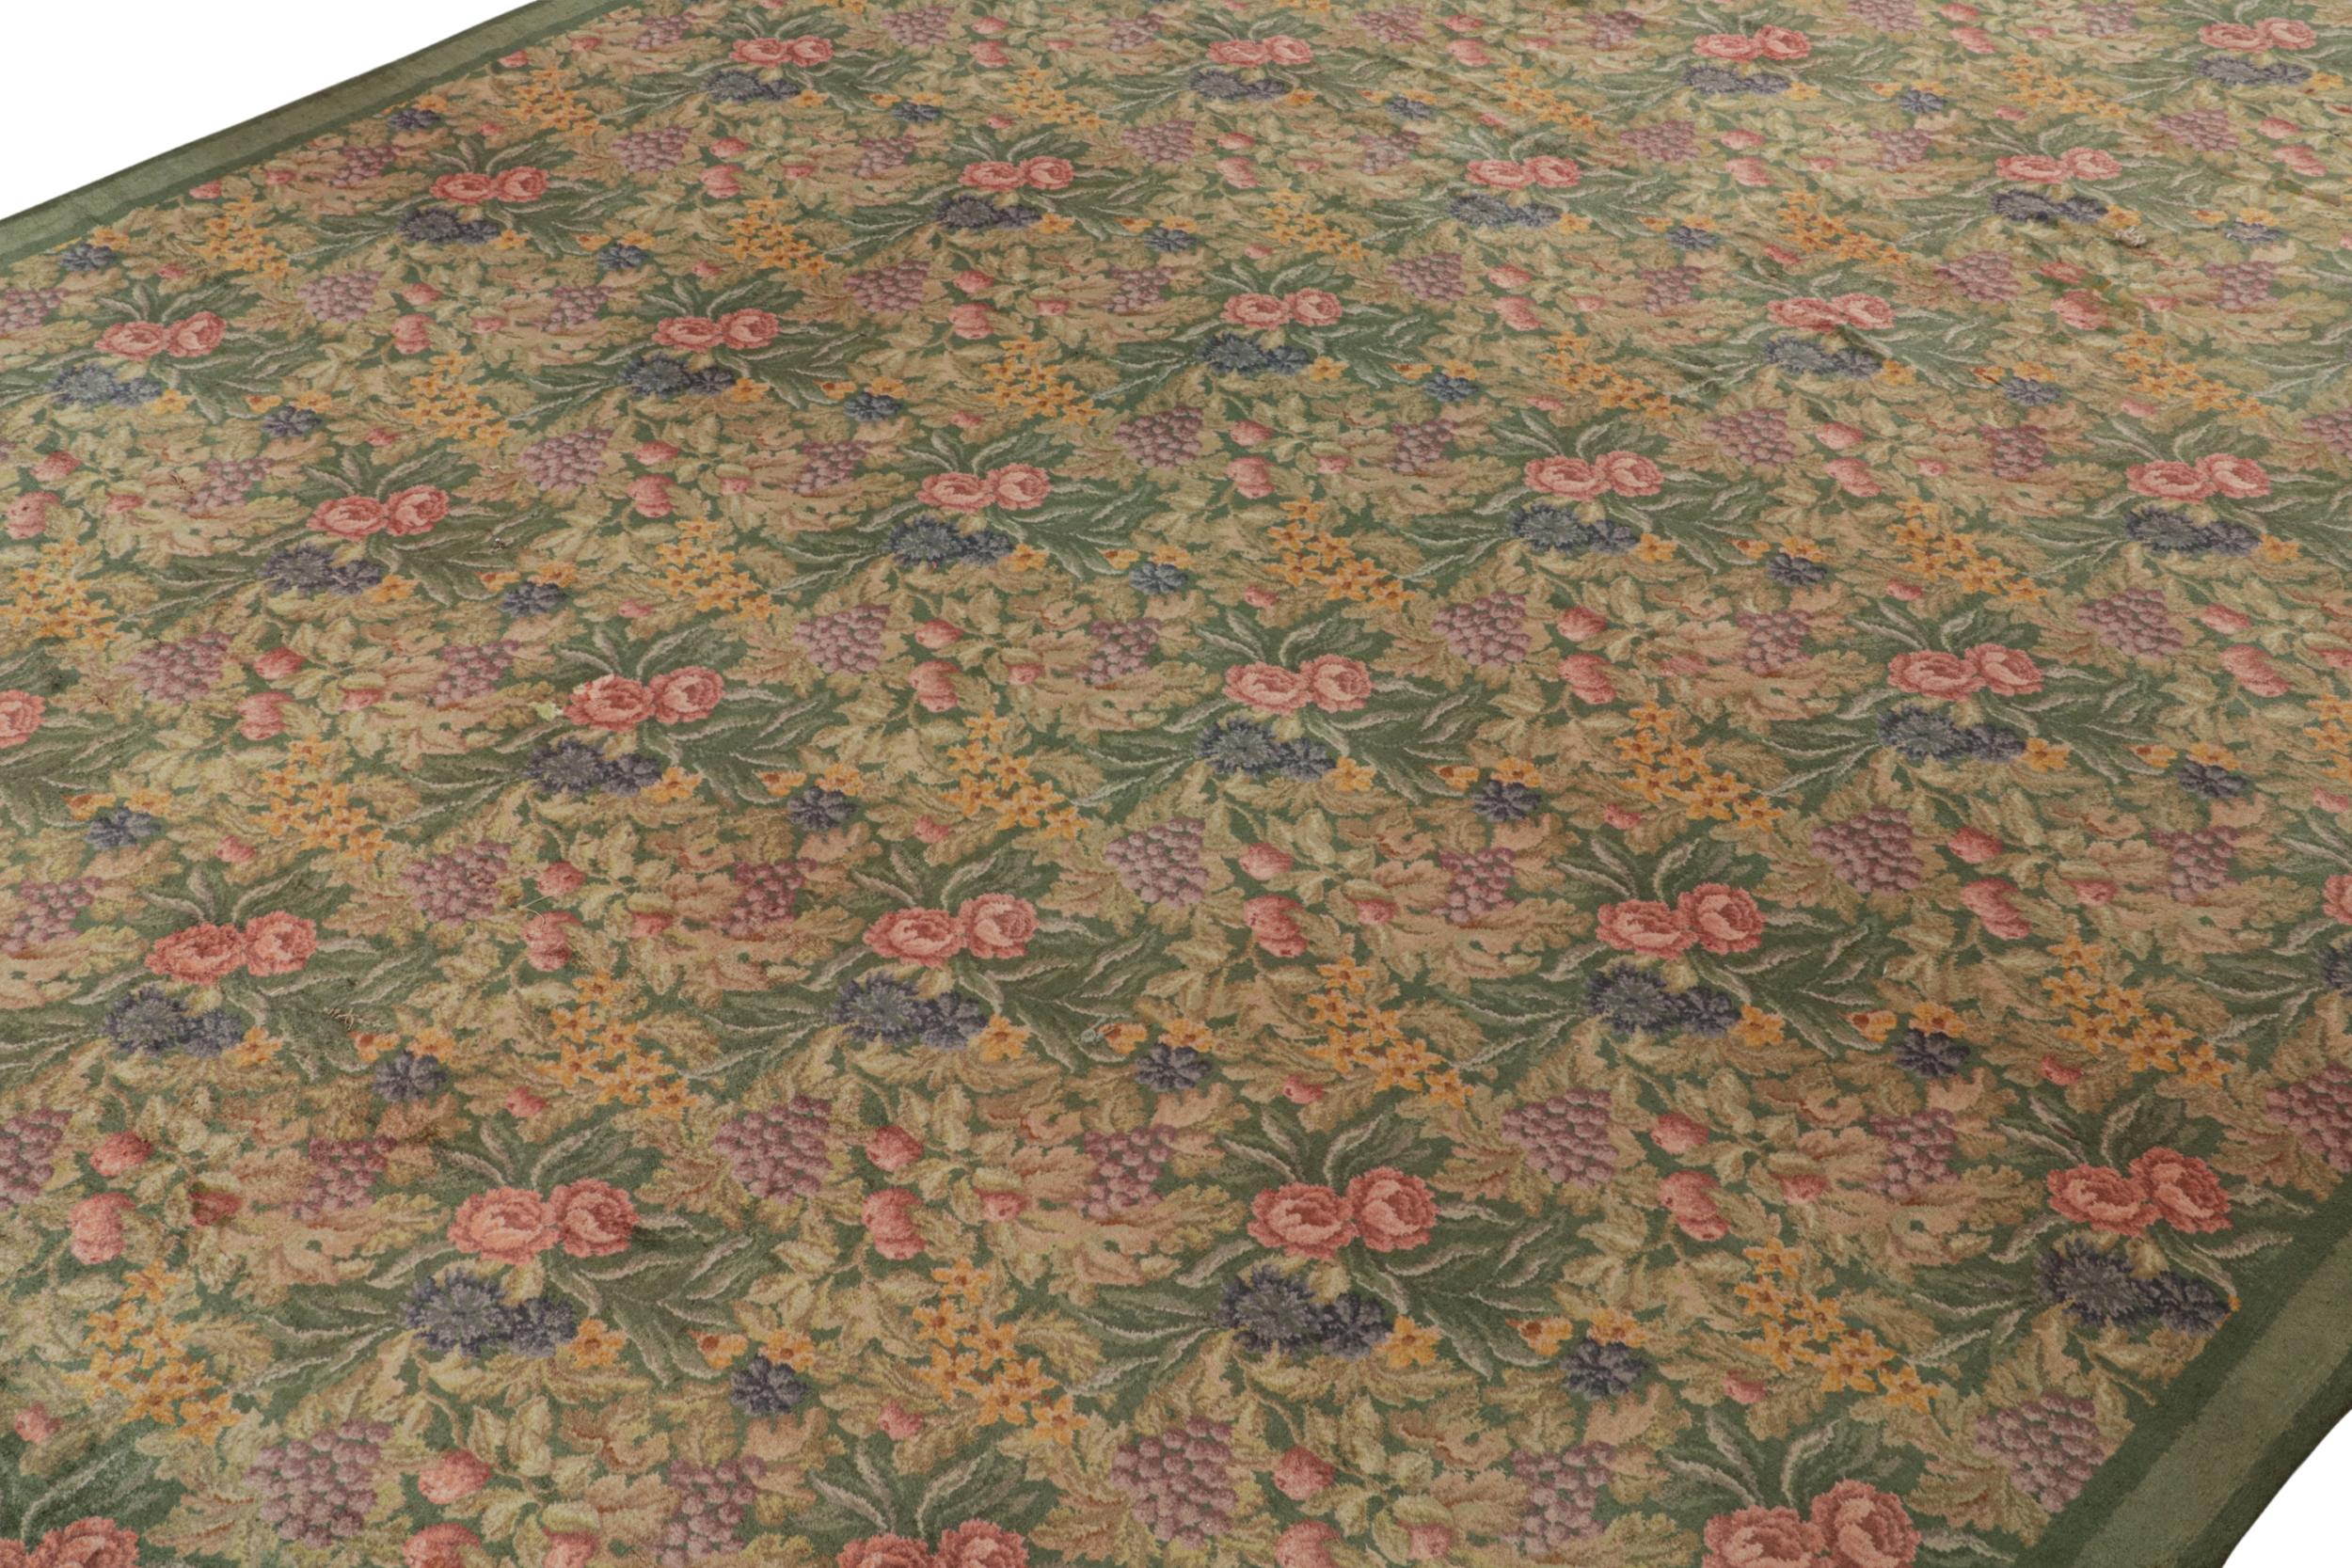 Noué à la main en laine, cet ancien tapis Axminster anglais 13x17 datant de 1920-1930 est un rare tapis surdimensionné dans ce style européen.

Sur le Design : 

Ce tapis unique présente un motif floral dans le style botanique, avec des teintes